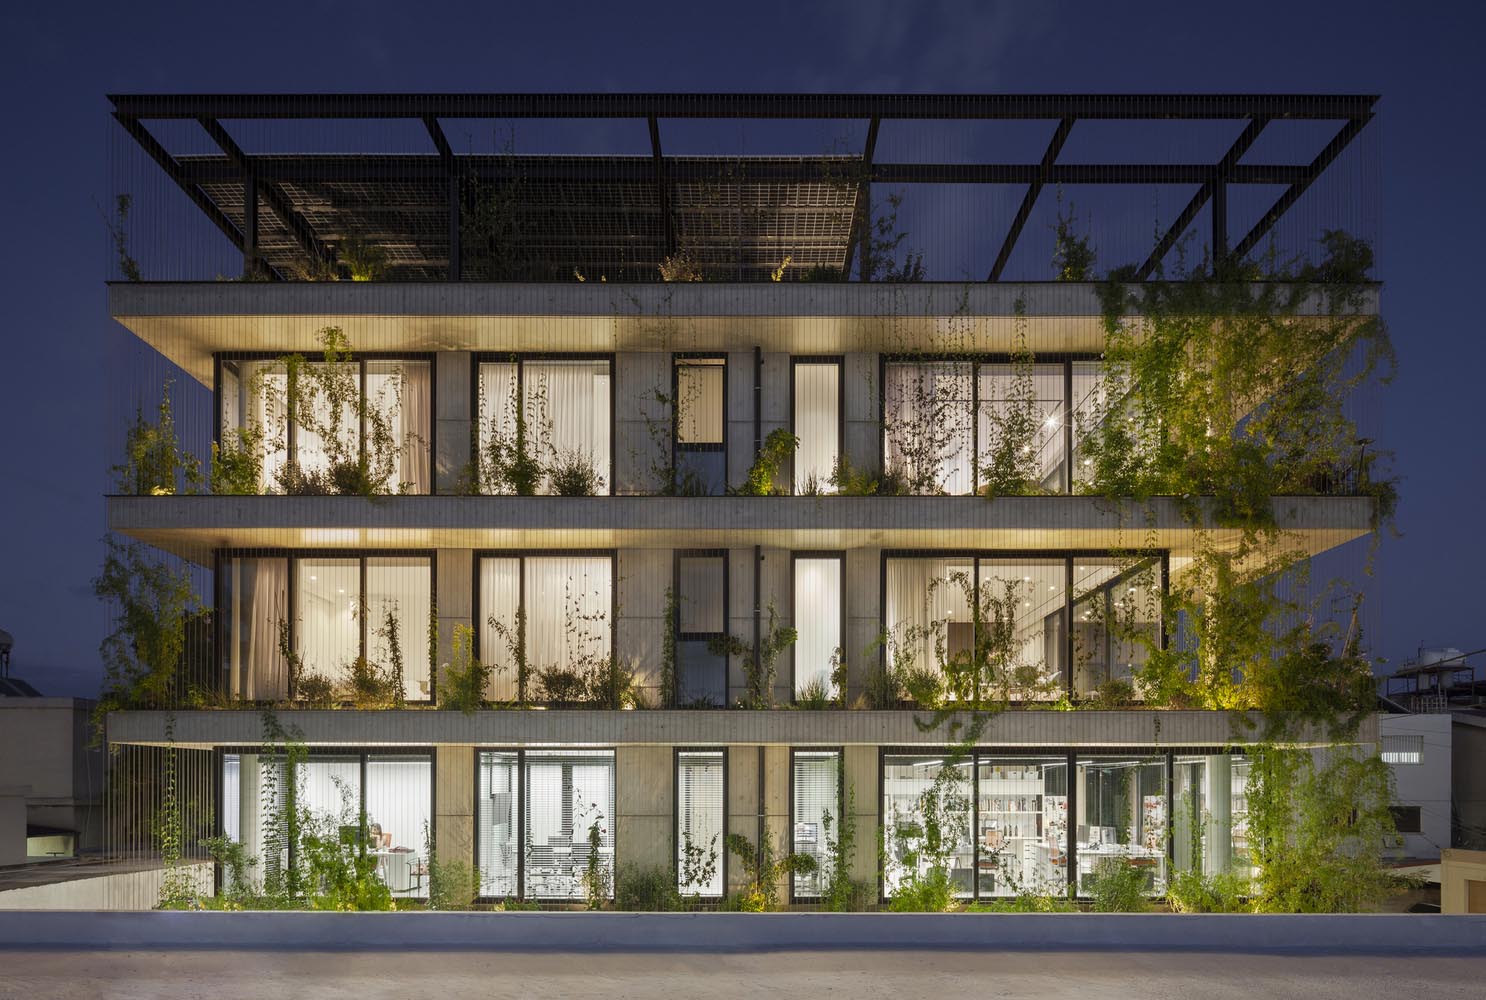 باغ شهری طراحی شده توسط شرکت معماری Ioizou و همکاران